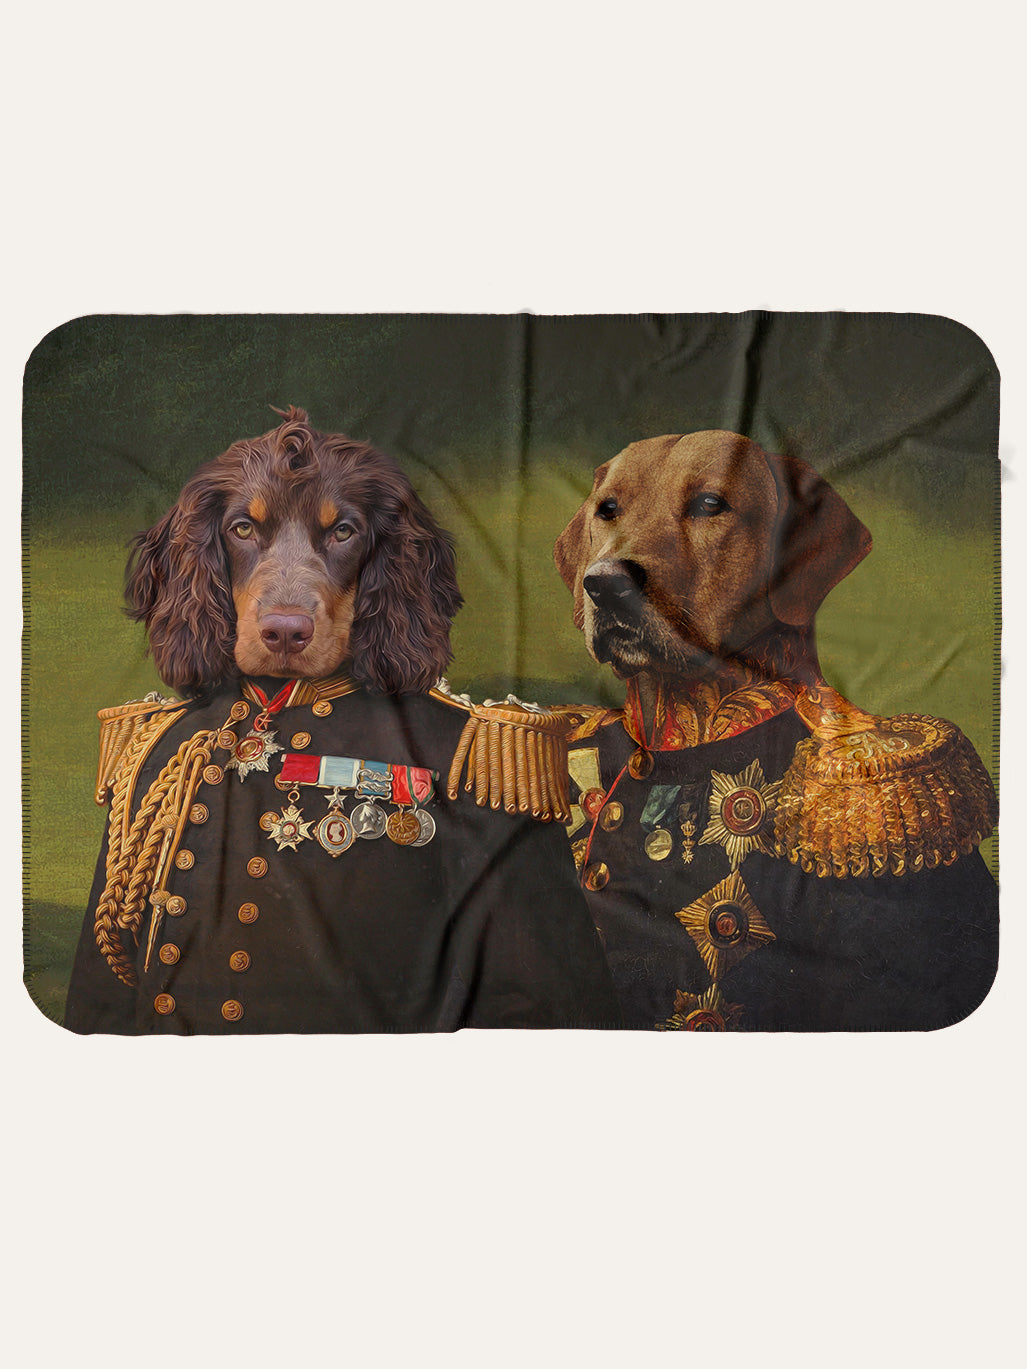 The Earl & The General - Custom Pet Blanket